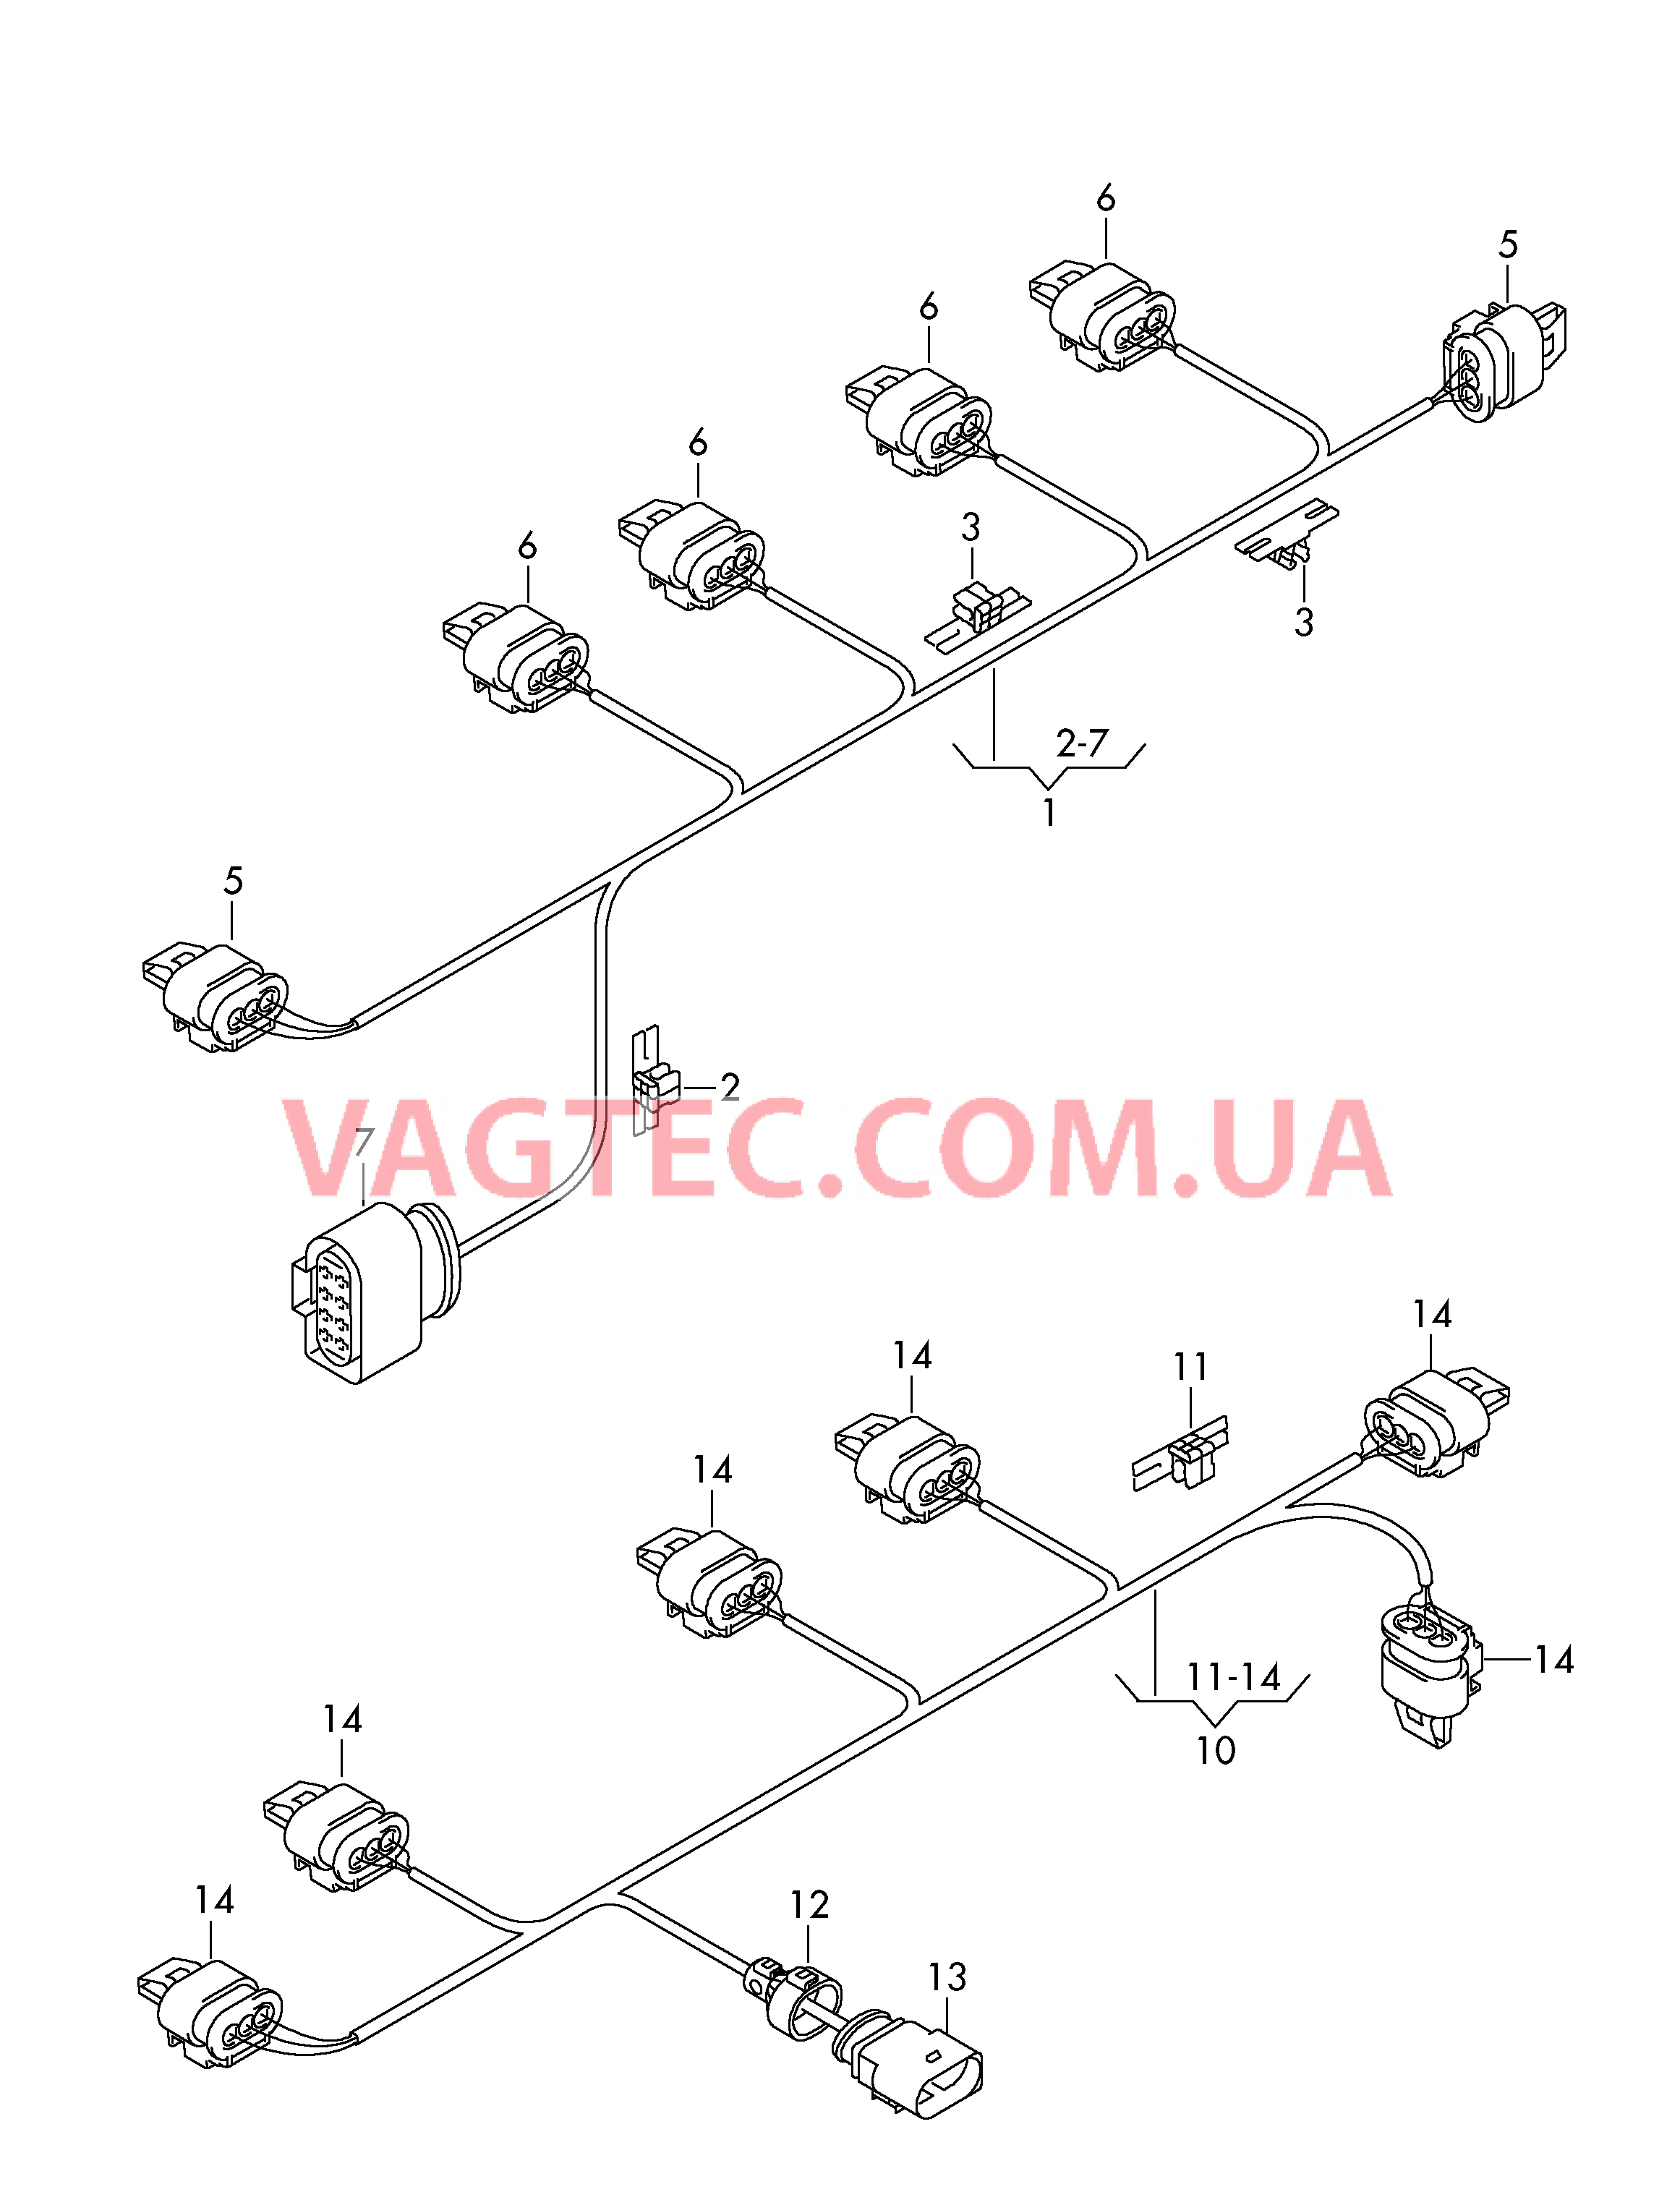 Жгут проводов для бампера Жгут проводов для ультразвуковых датчиков  Бампер  см. панель иллюстраций:  для VOLKSWAGEN Caddy 2015